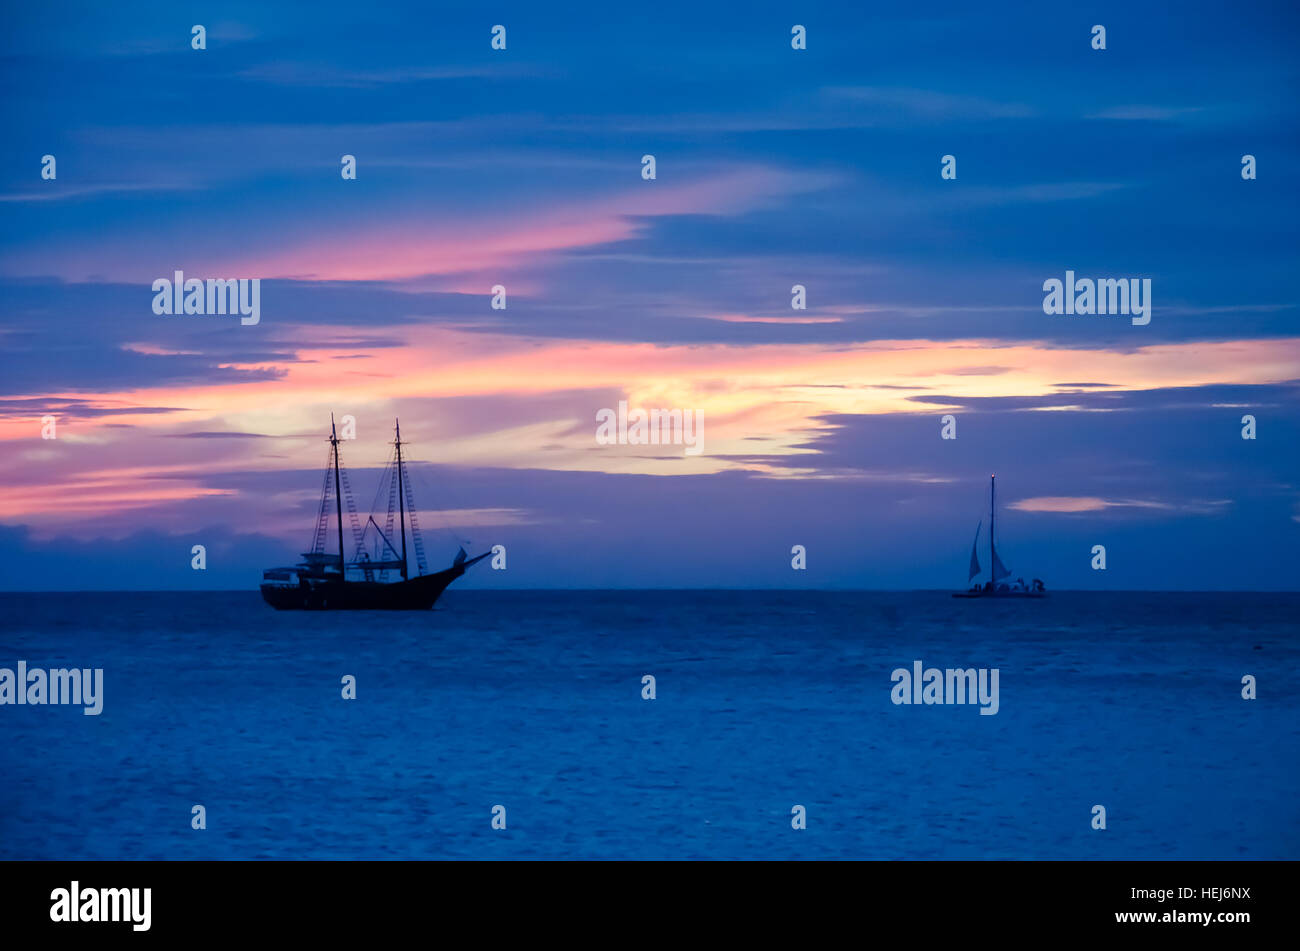 Pirate barca a vela sul mare navigando verso il tramonto. L'immagine è stata presa da Palm Beach di Aruba, nel mar dei Caraibi. Foto Stock